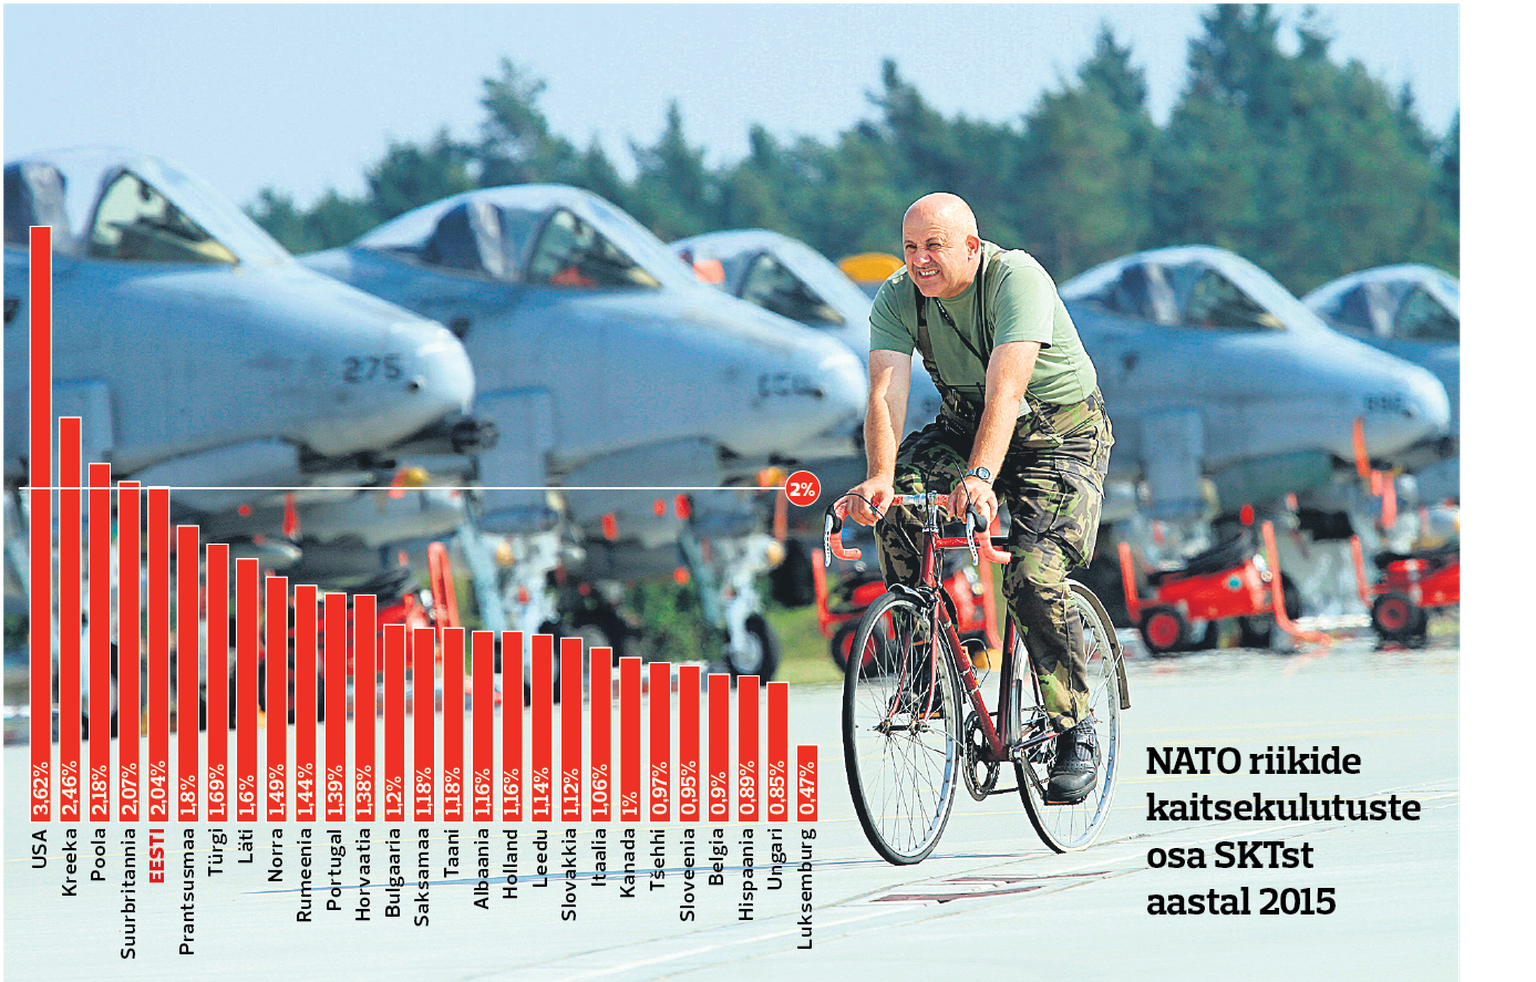 NATO kaitsekulud riigiti.